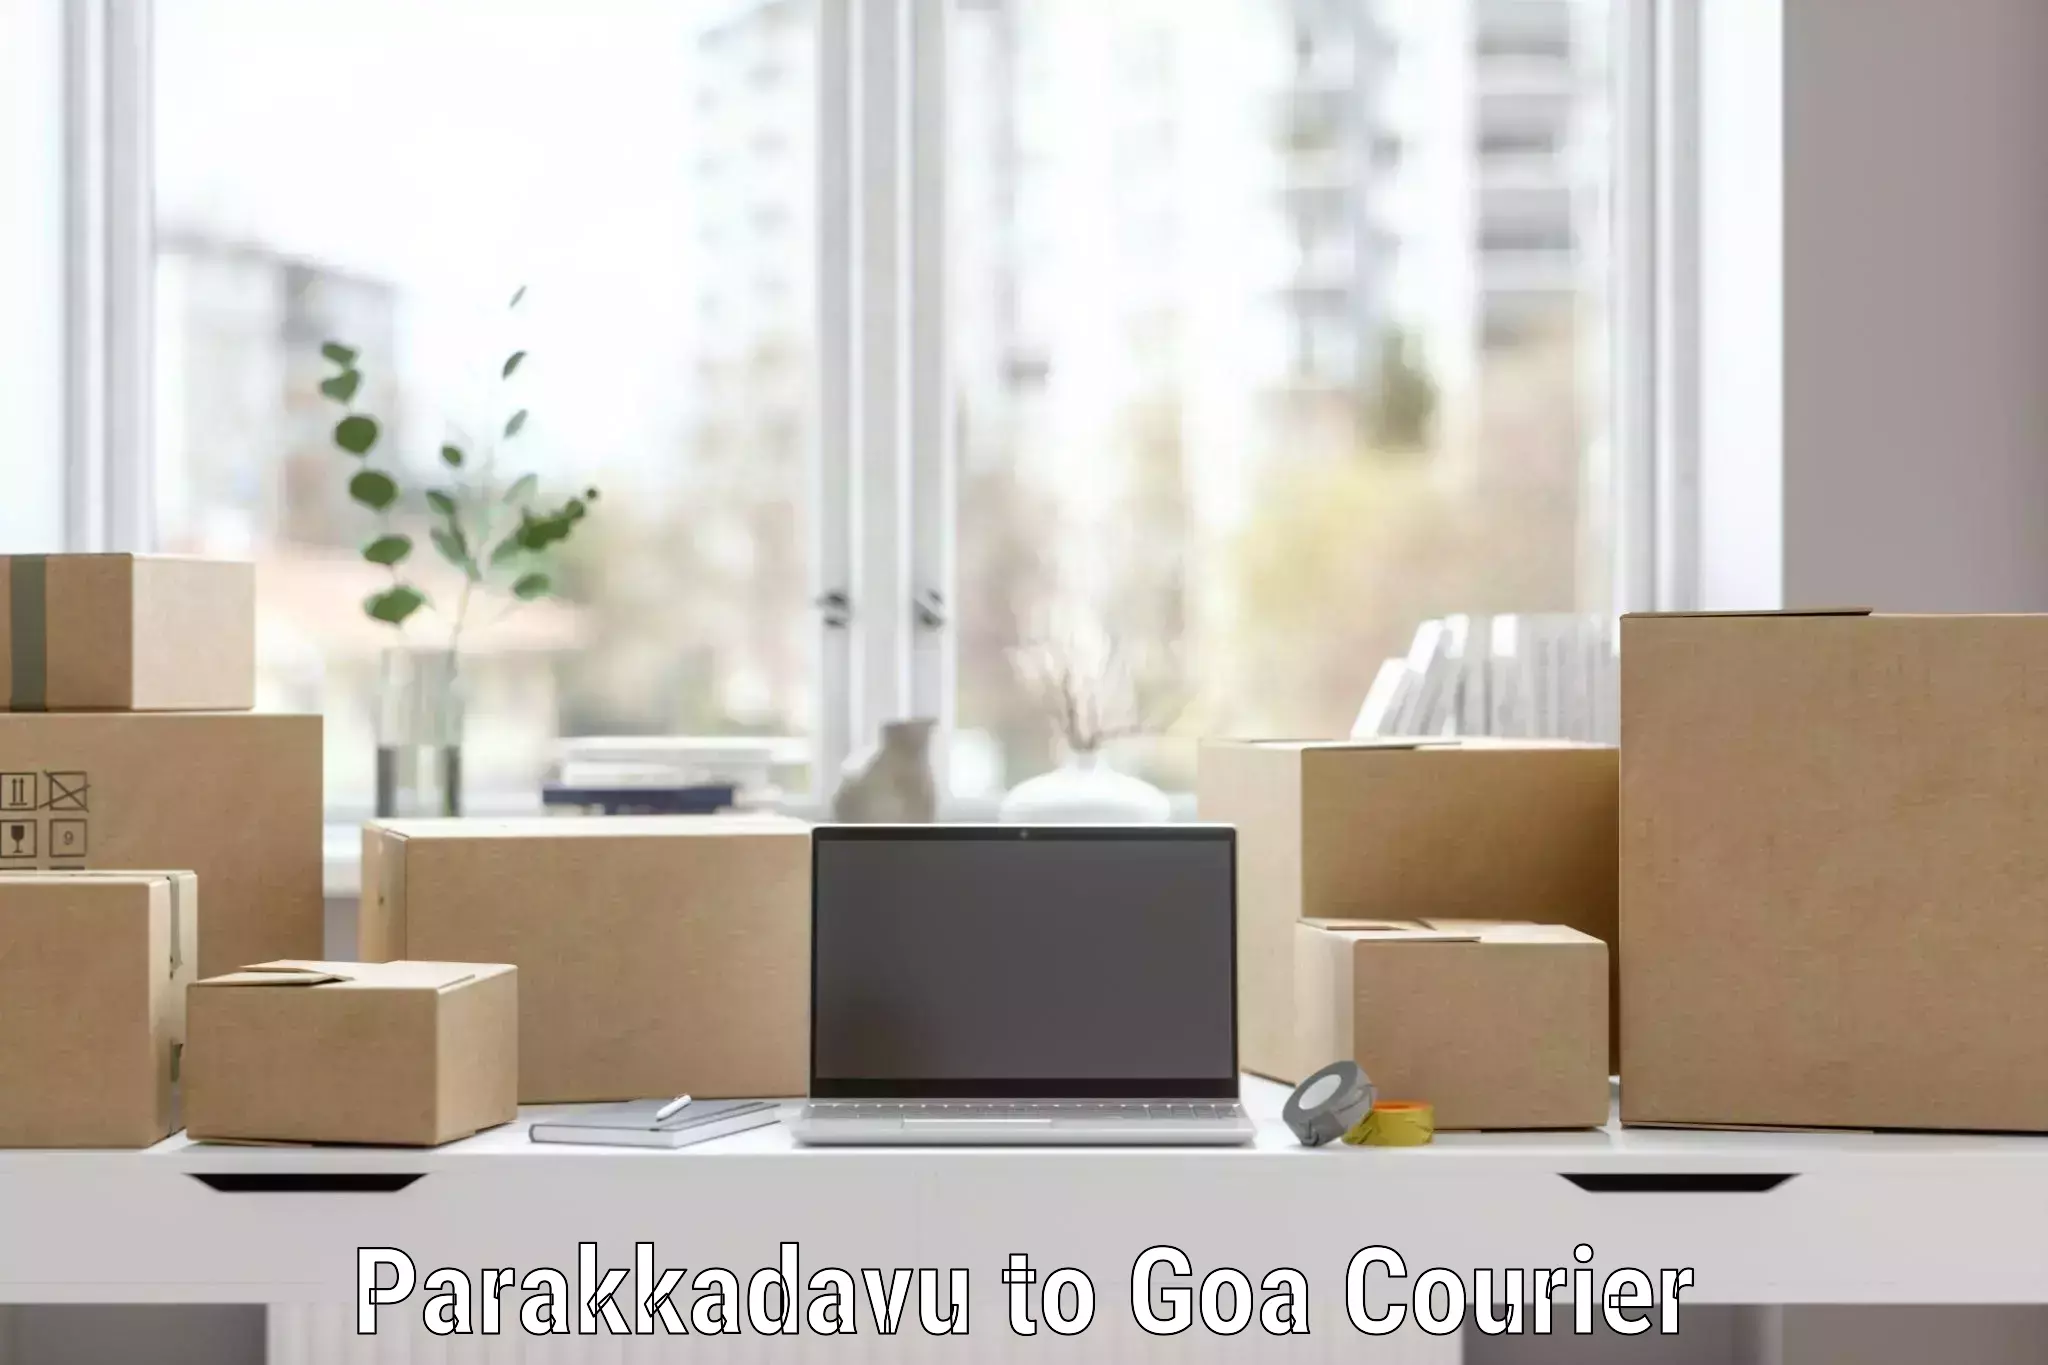 Safe household movers Parakkadavu to Panaji